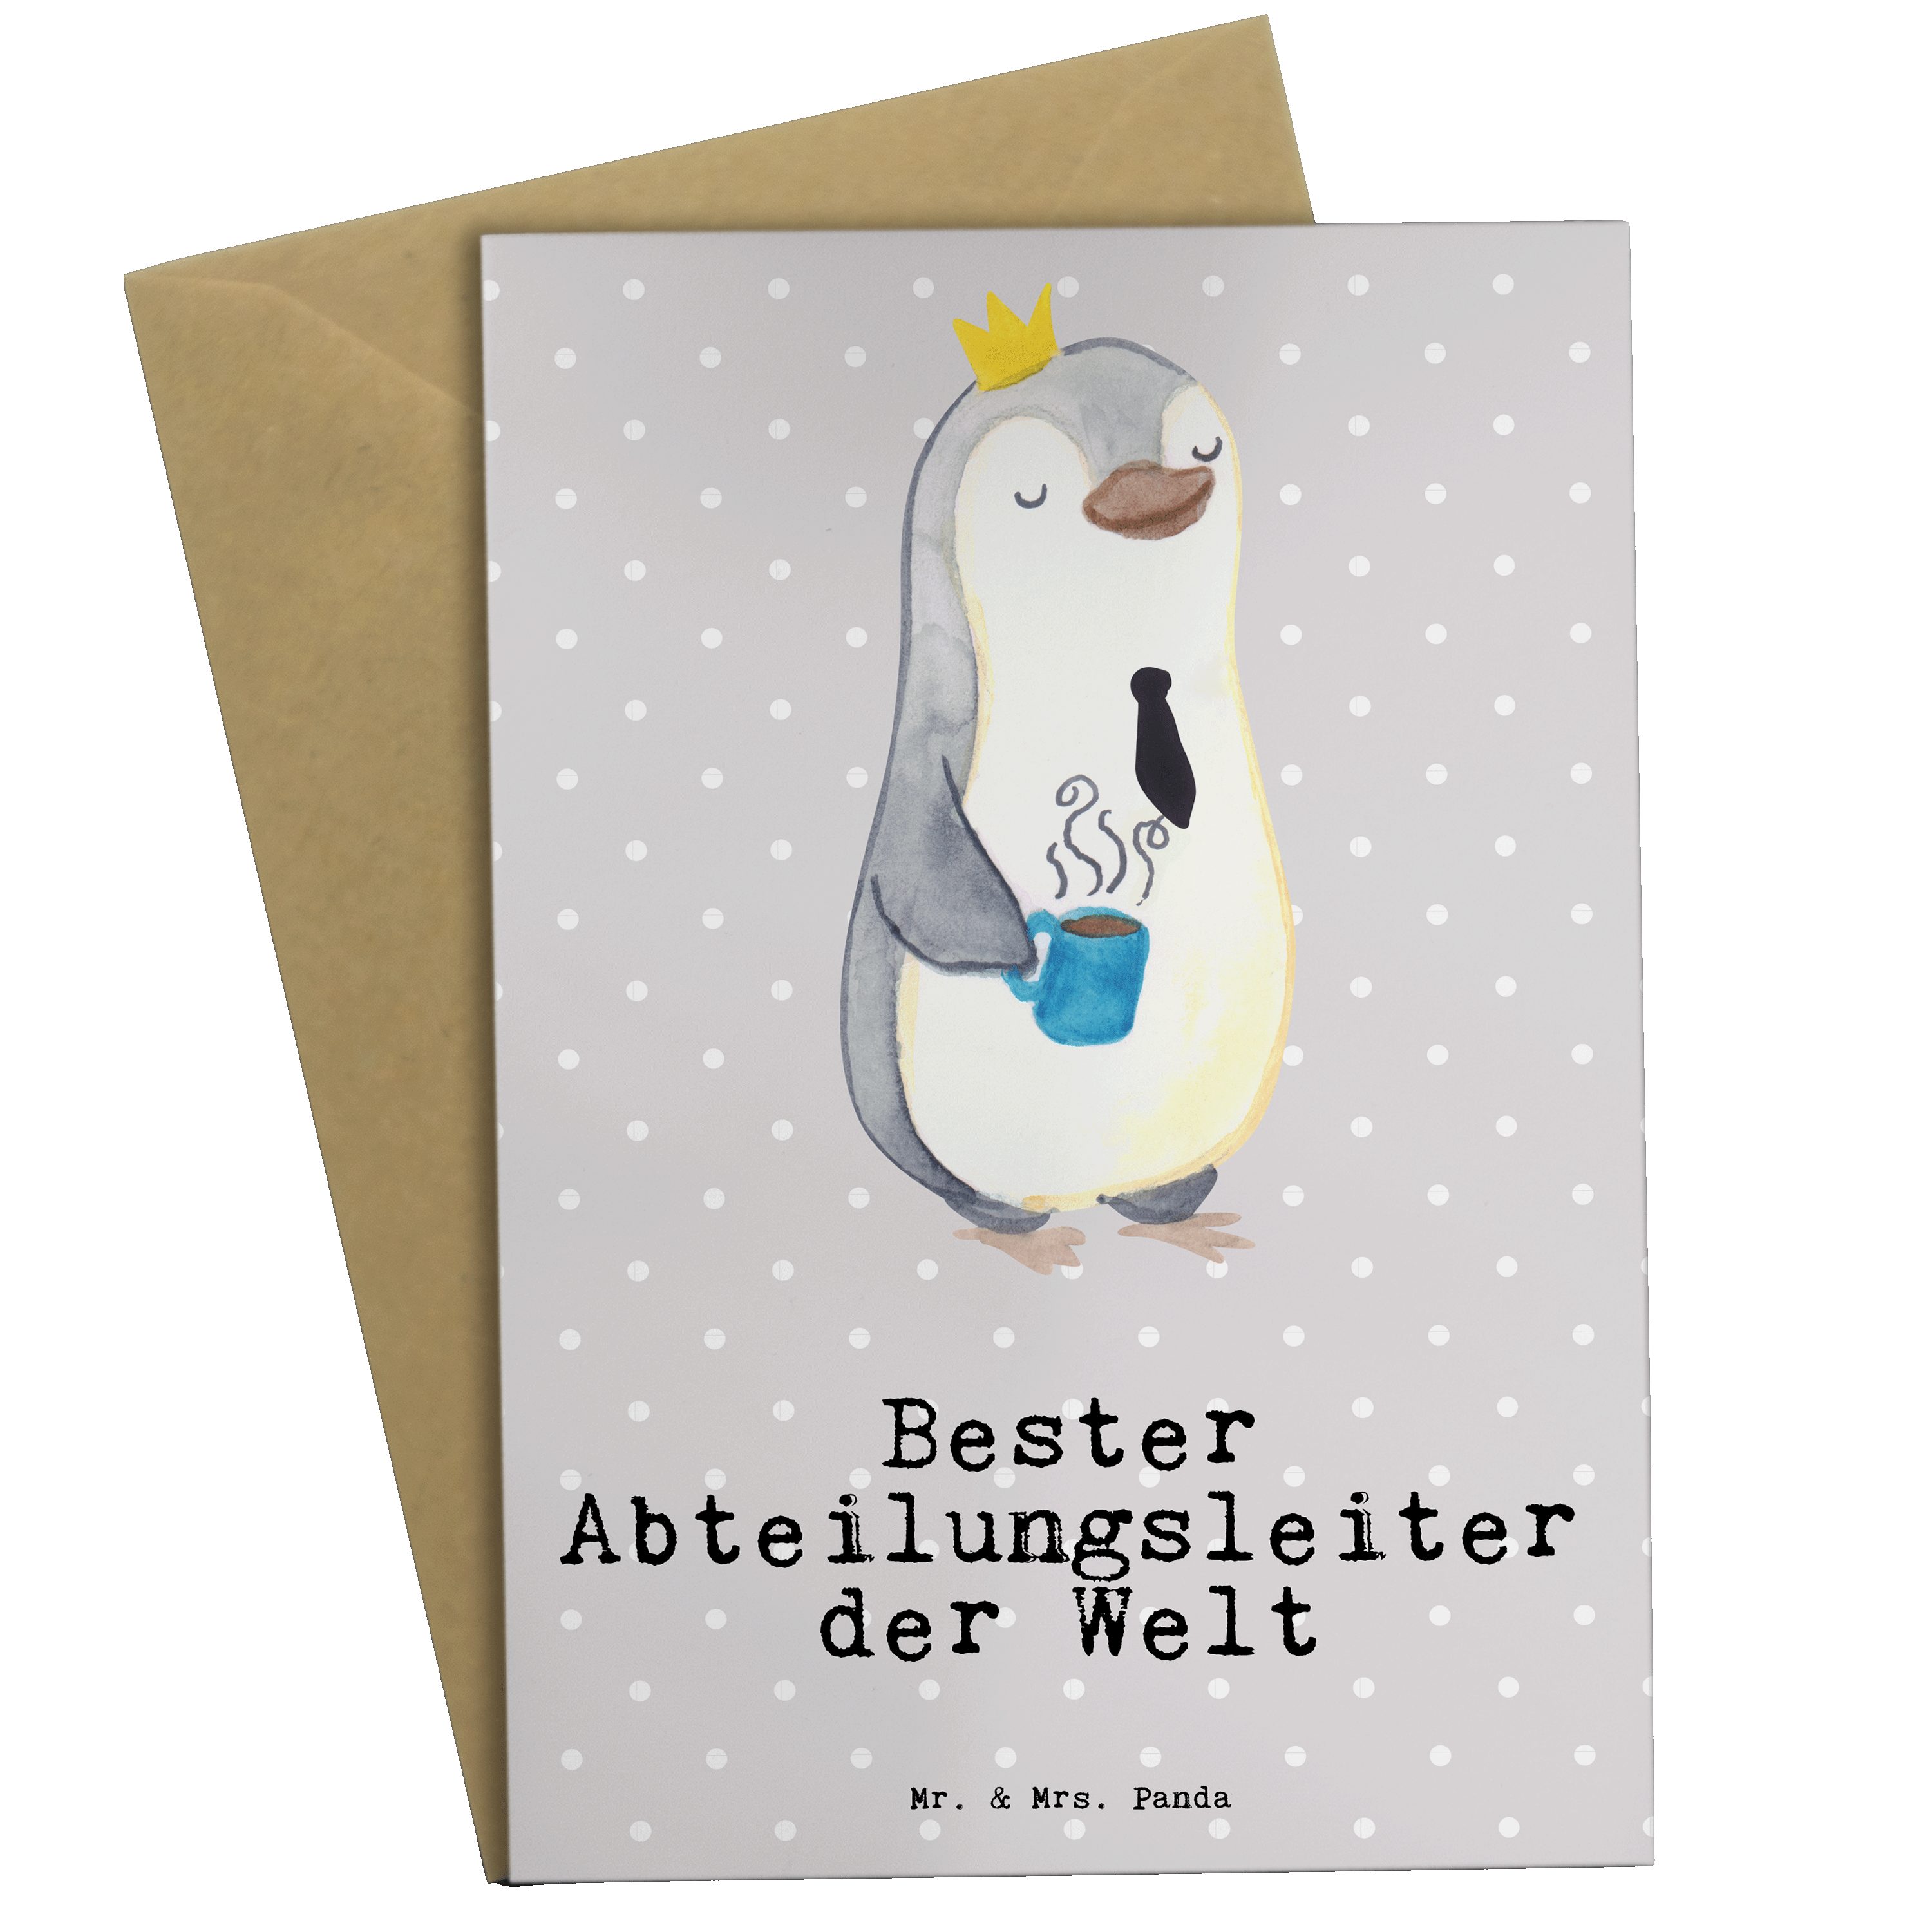 Mr. & Mrs. Panda Grußkarte Pinguin Bester Abteilungsleiter der Welt - Grau Pastell - Geschenk, G